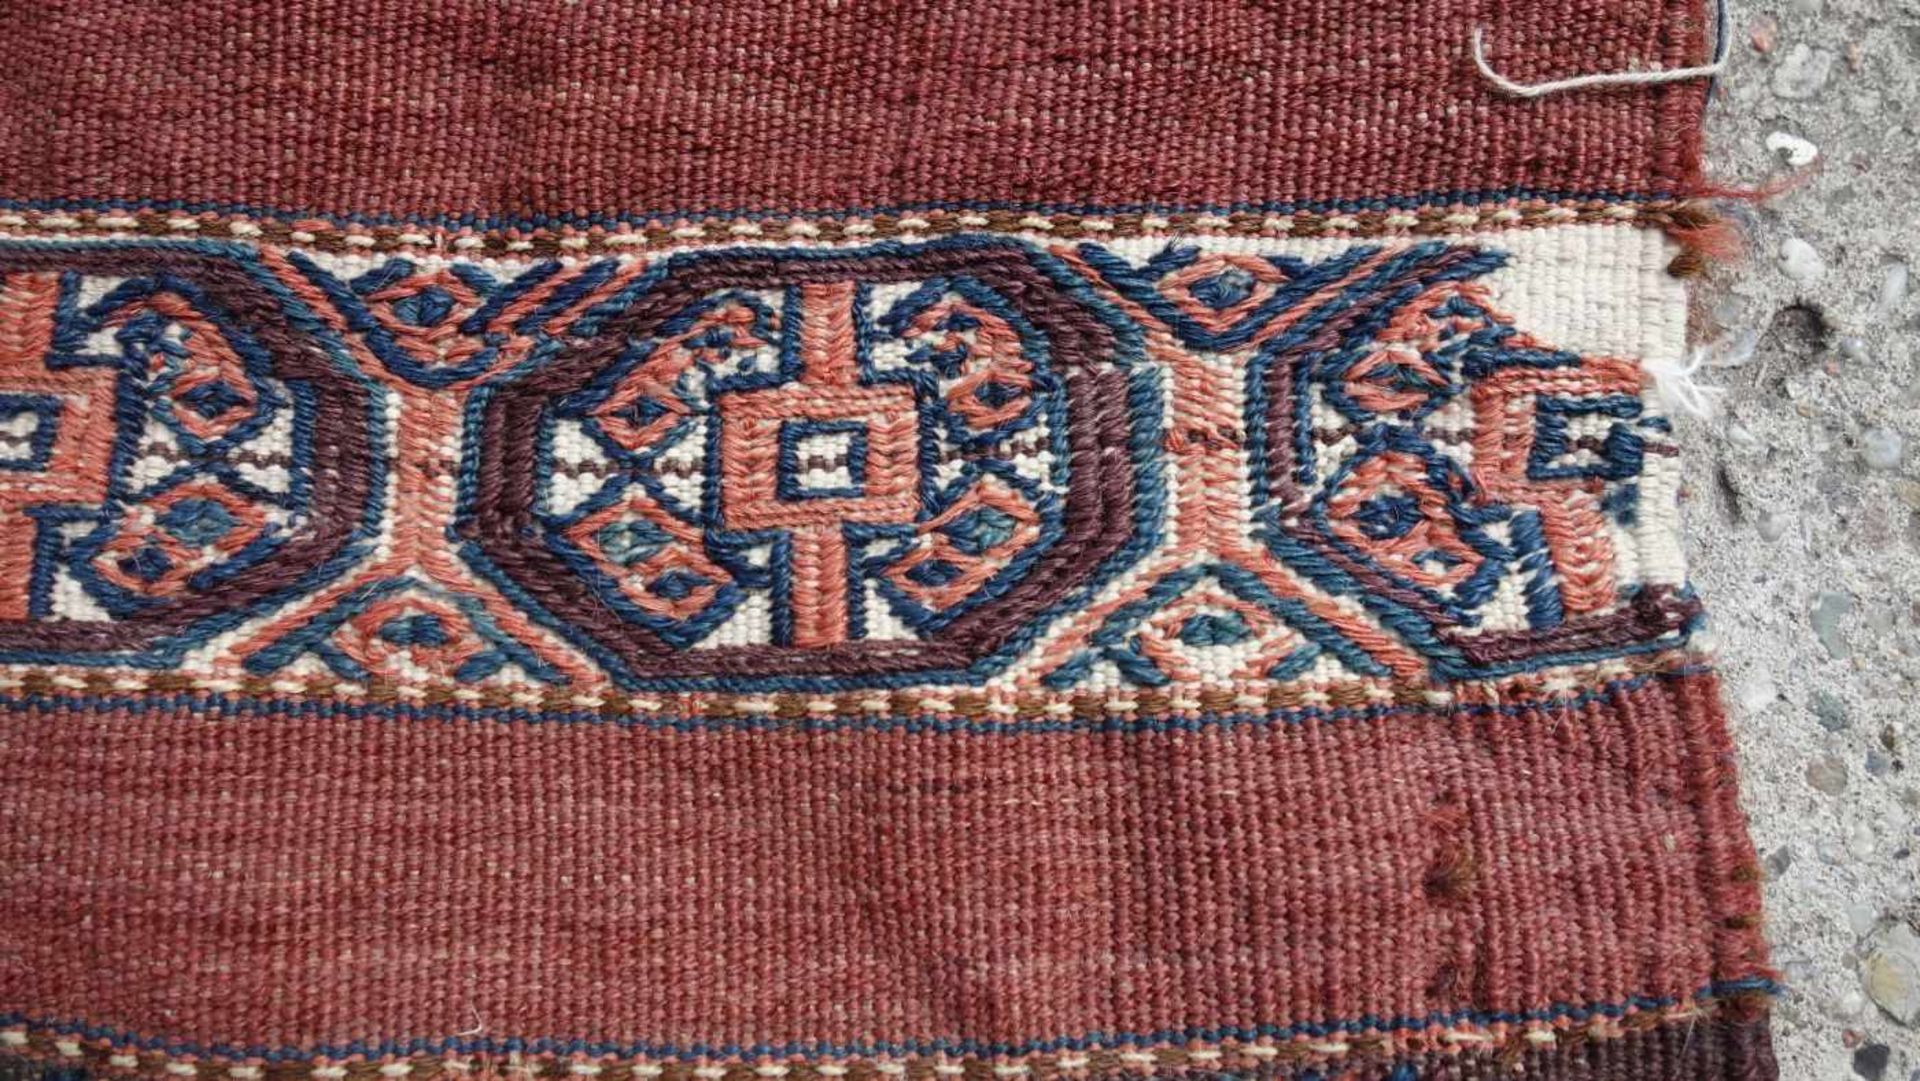 YOMUD: TSCHOWAL oder TORBA / NOMADEN TEPPICH / rug, Turkestan, Ende 19. Jh.. Rotgrundiger Teppich - Image 5 of 7